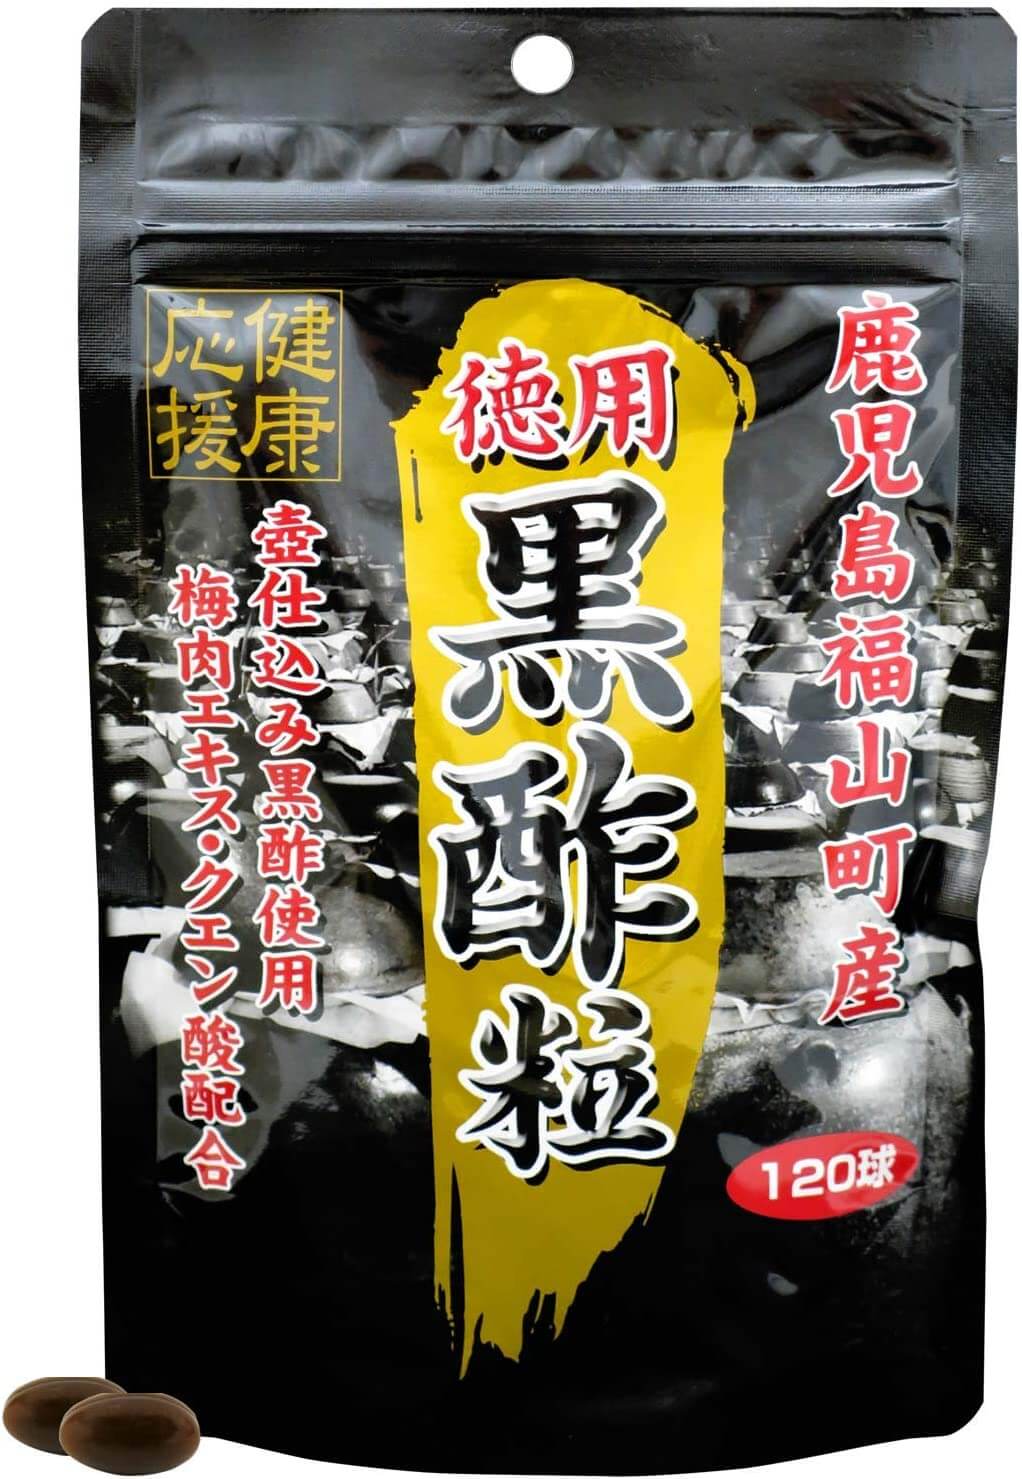 Пищевая добавка Yuuki Pharmaceutical с экстрактом черного уксуса dr arsenin концентрированный пищевой продукт стройность